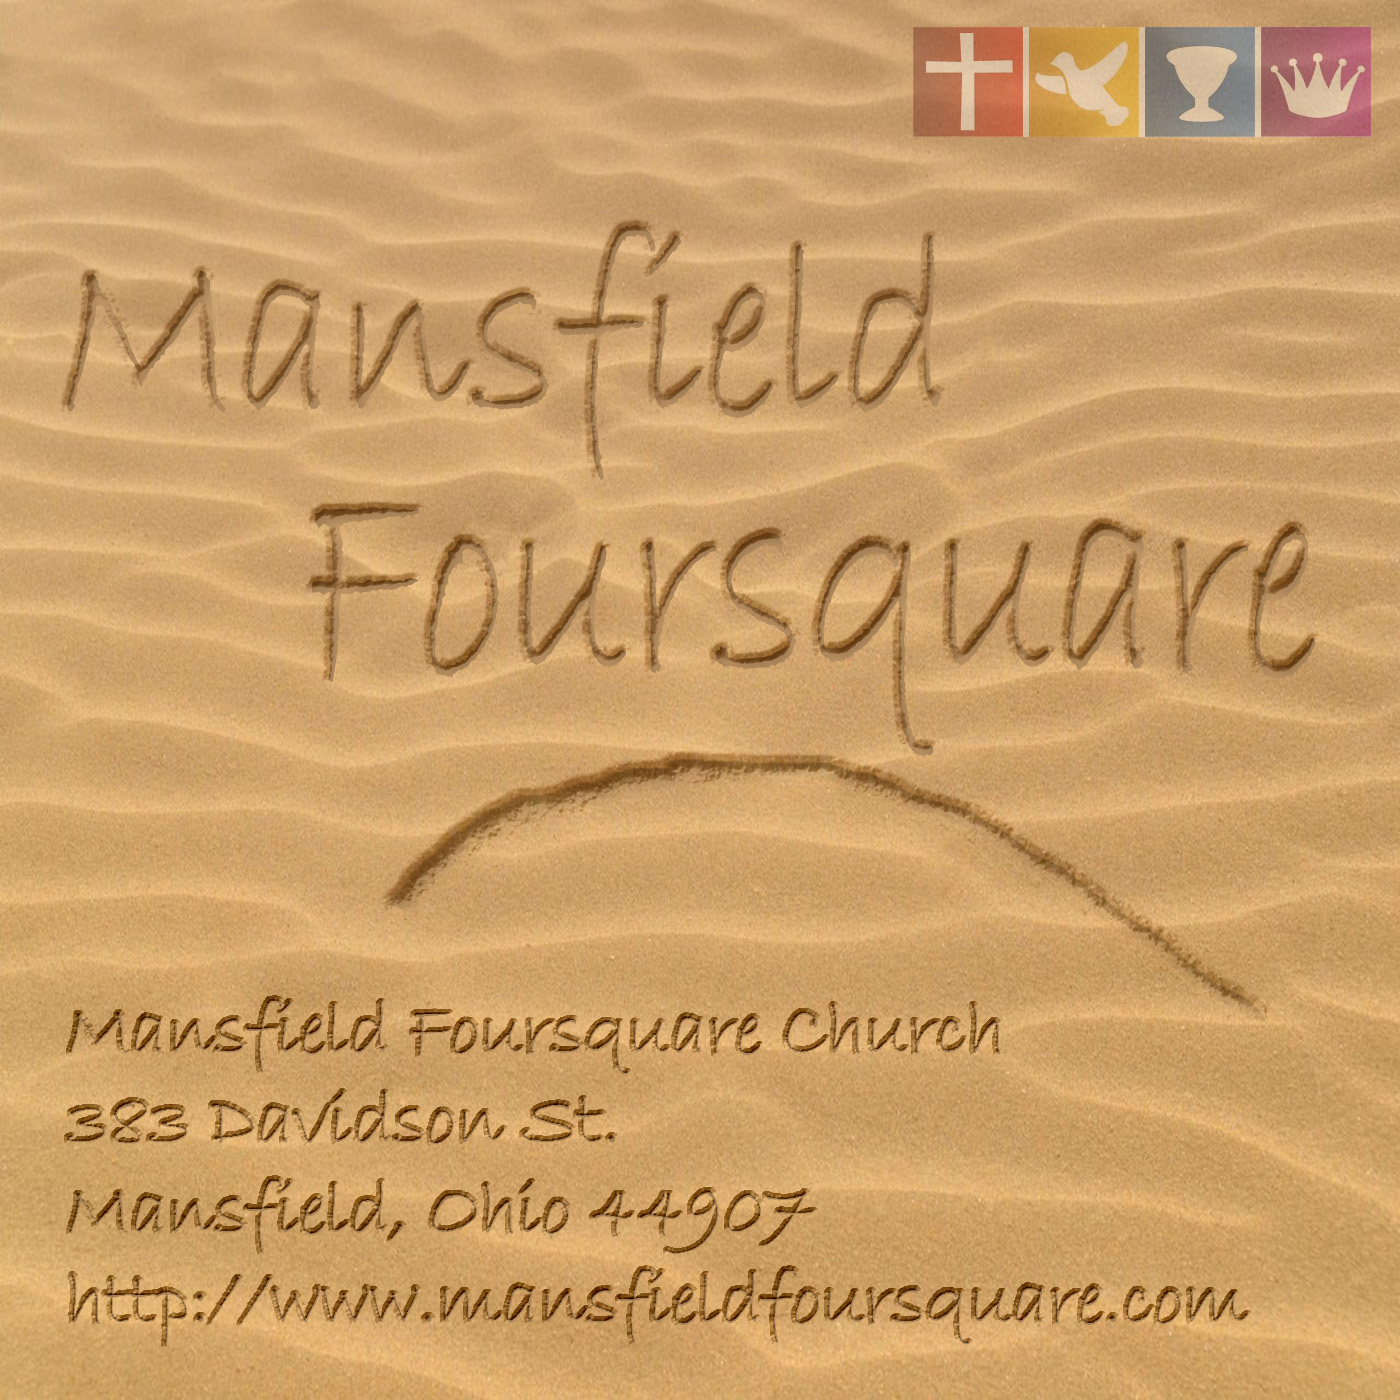 Mansfield Foursquare